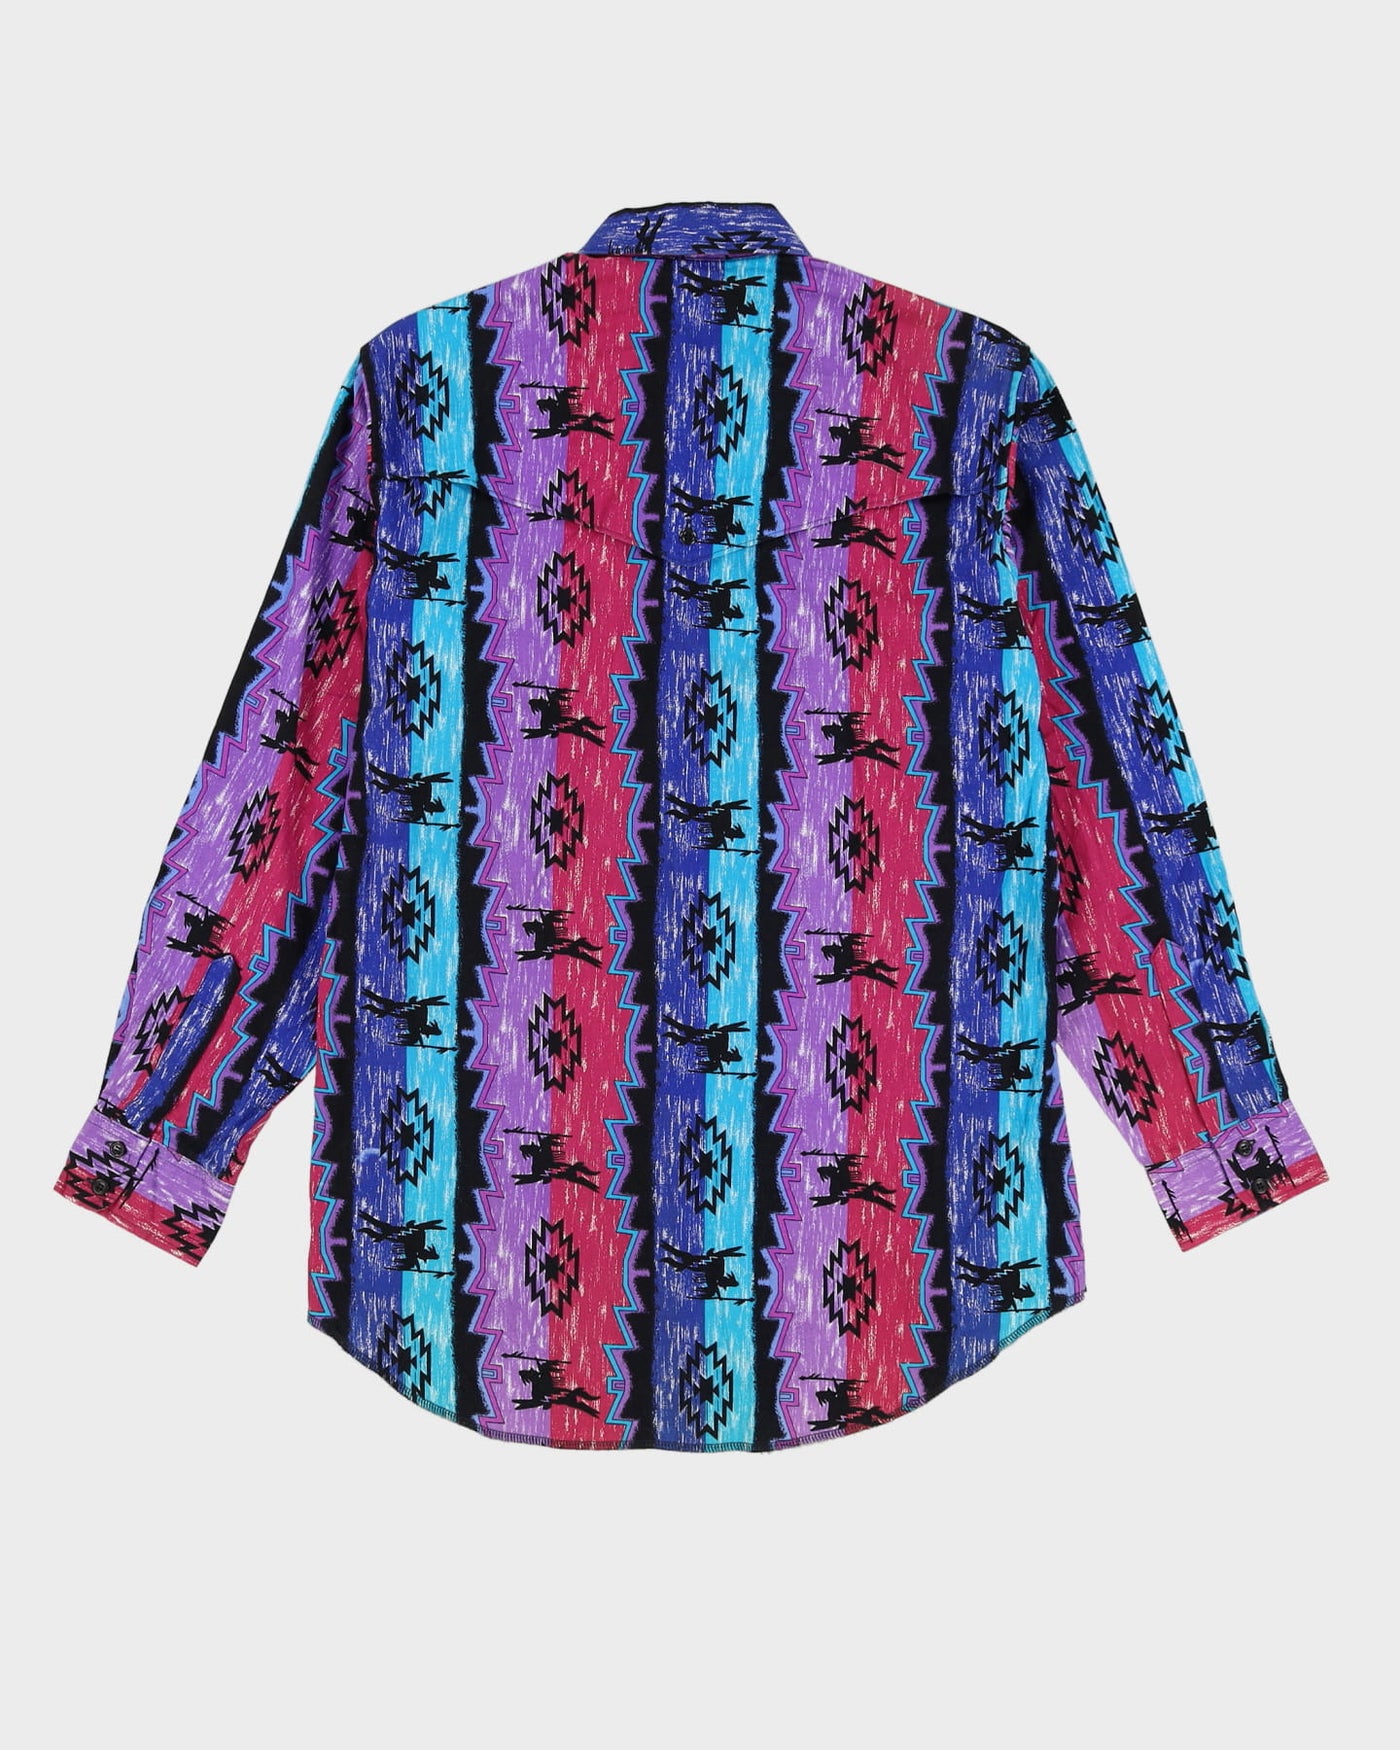 Vintage 80s Wrangler Purple / Blue / Black Patterned Western Shirt - L